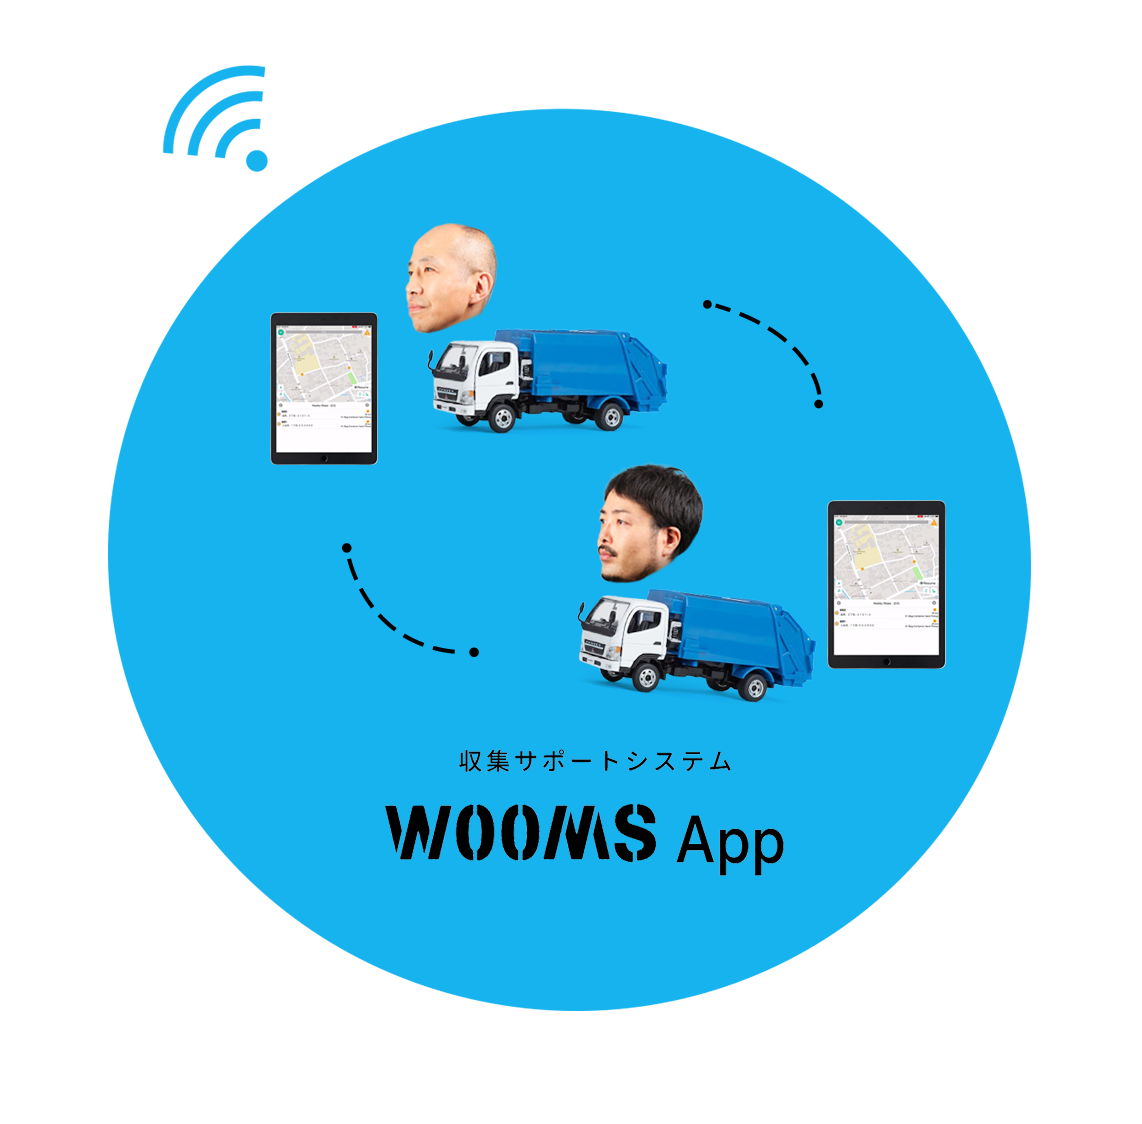 WOOMS App